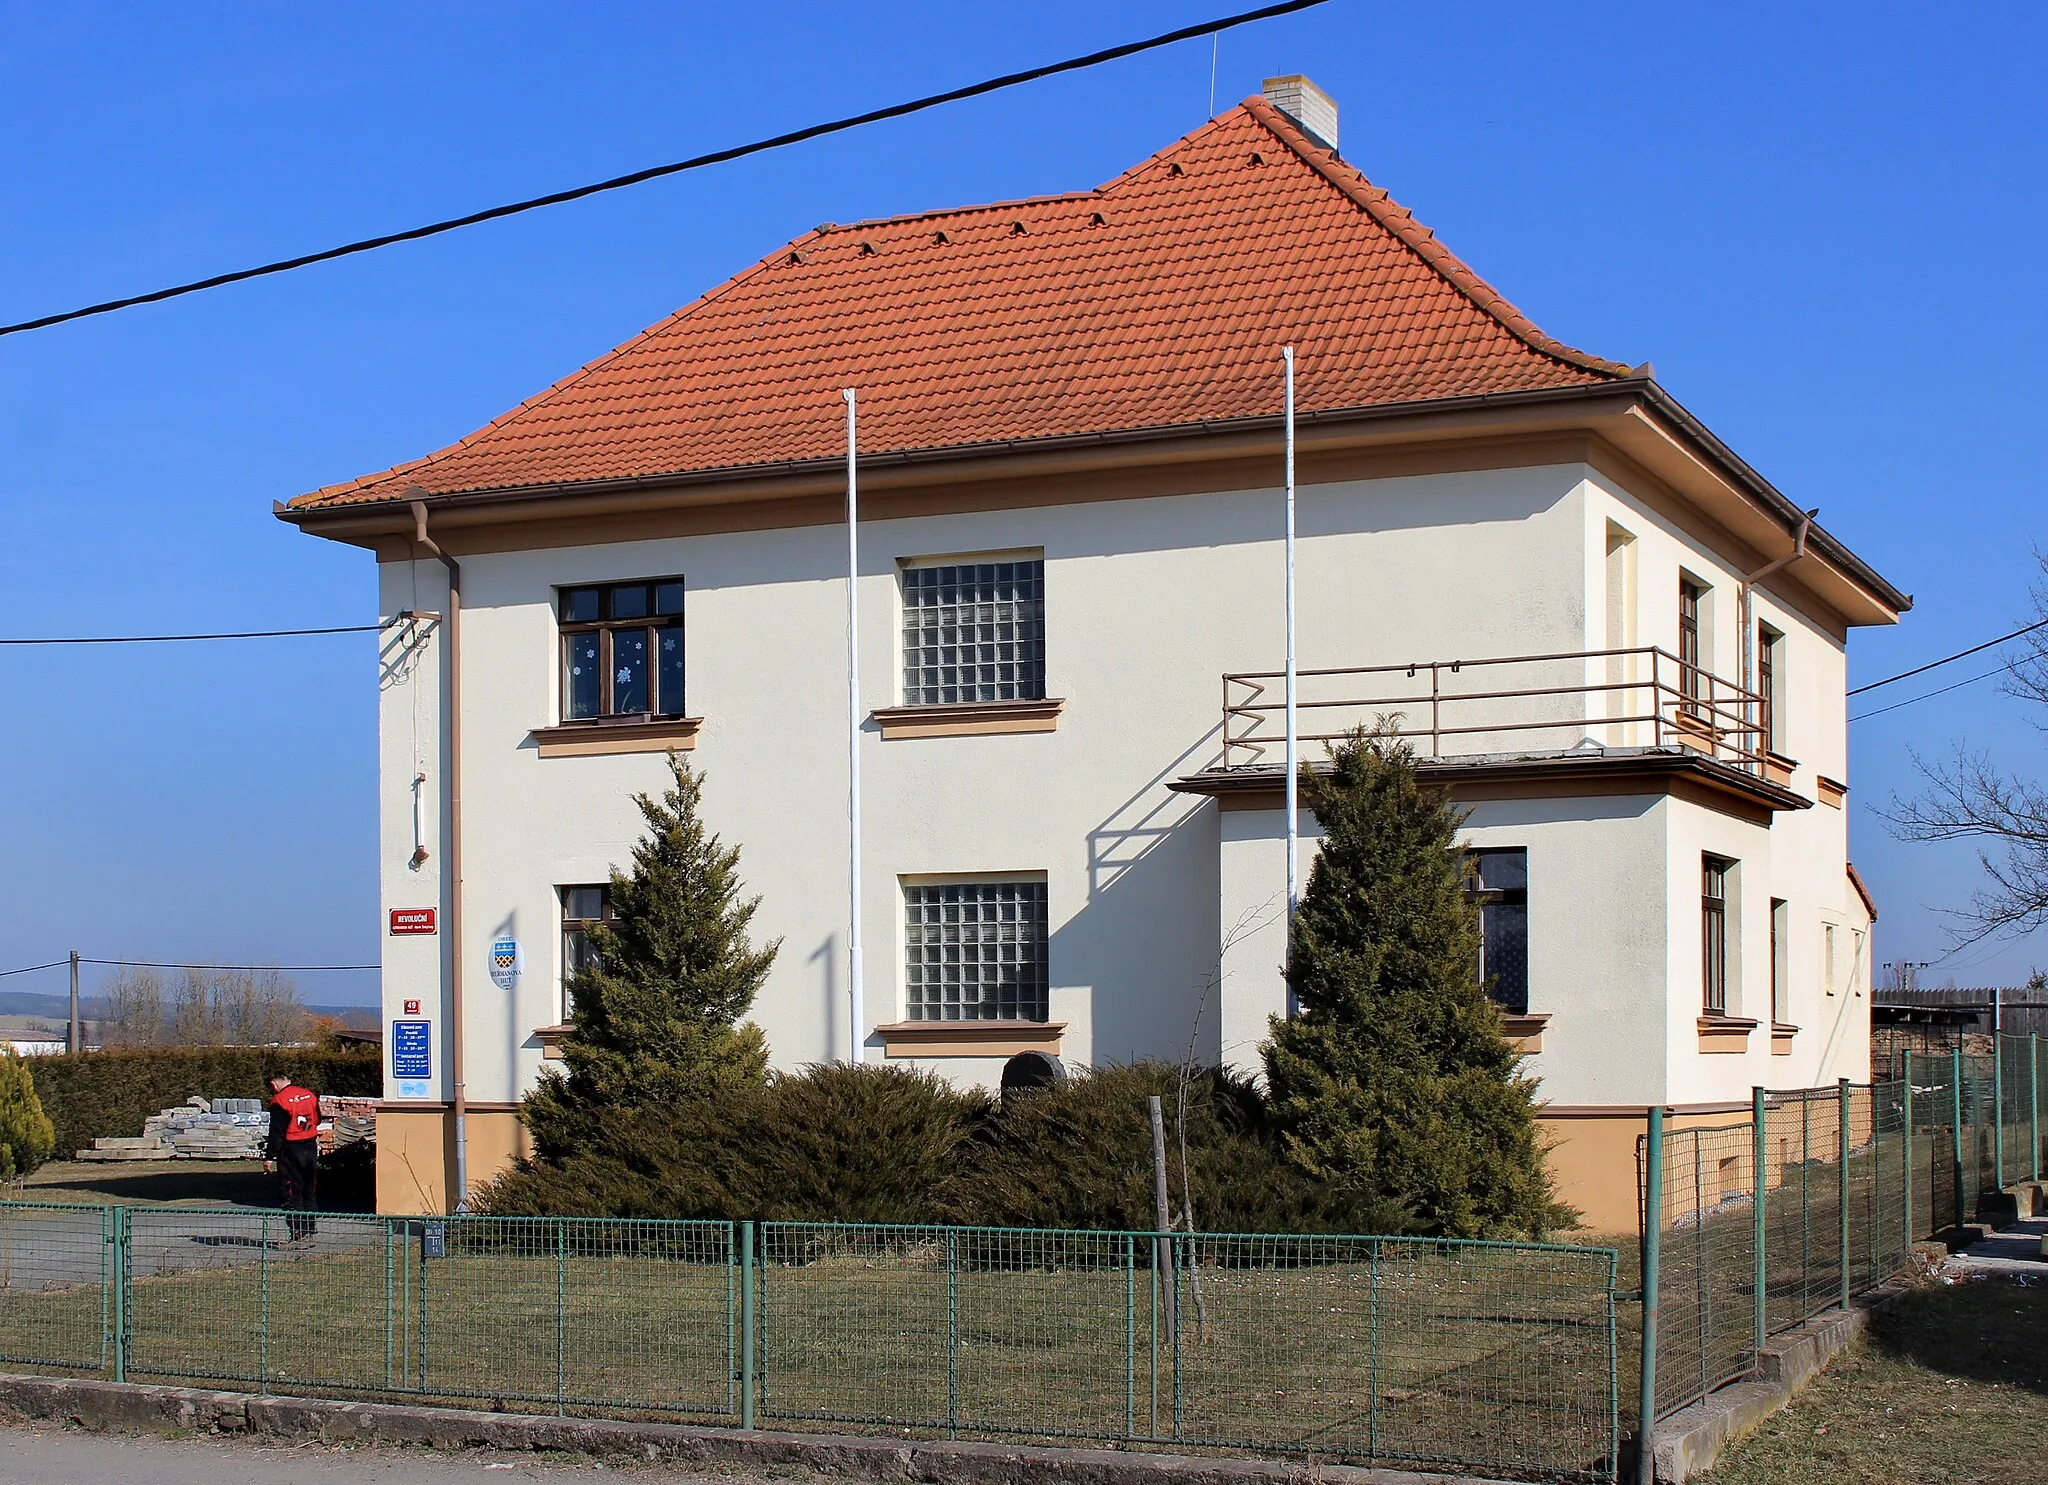 Photo showing: Municipal office in Heřmanova Huť, Czech Republic.